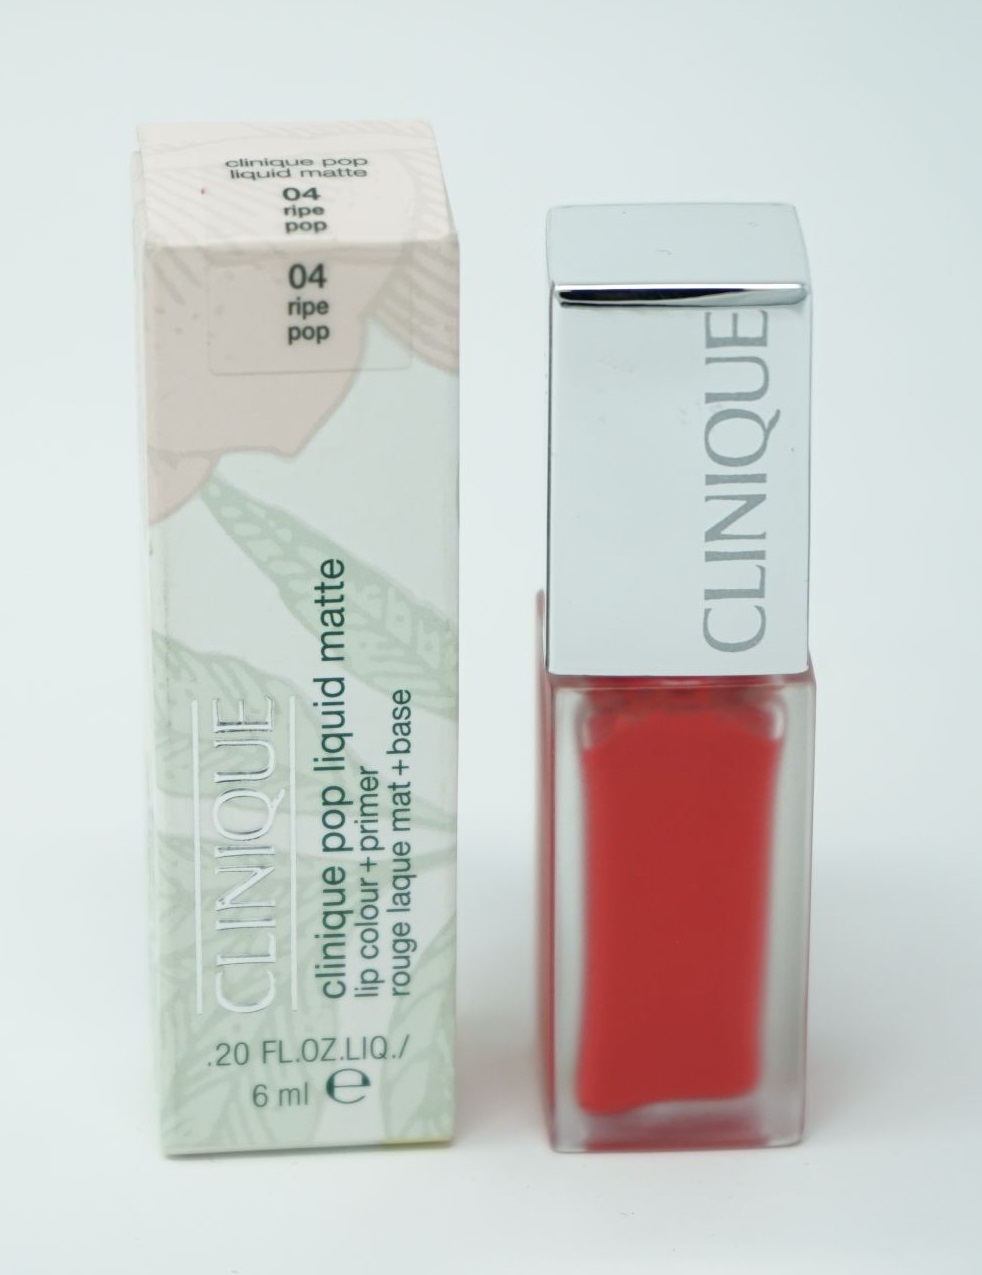 Clinique Pop Matte Lip Colour Lippenstift  6ml/ 04 ripe